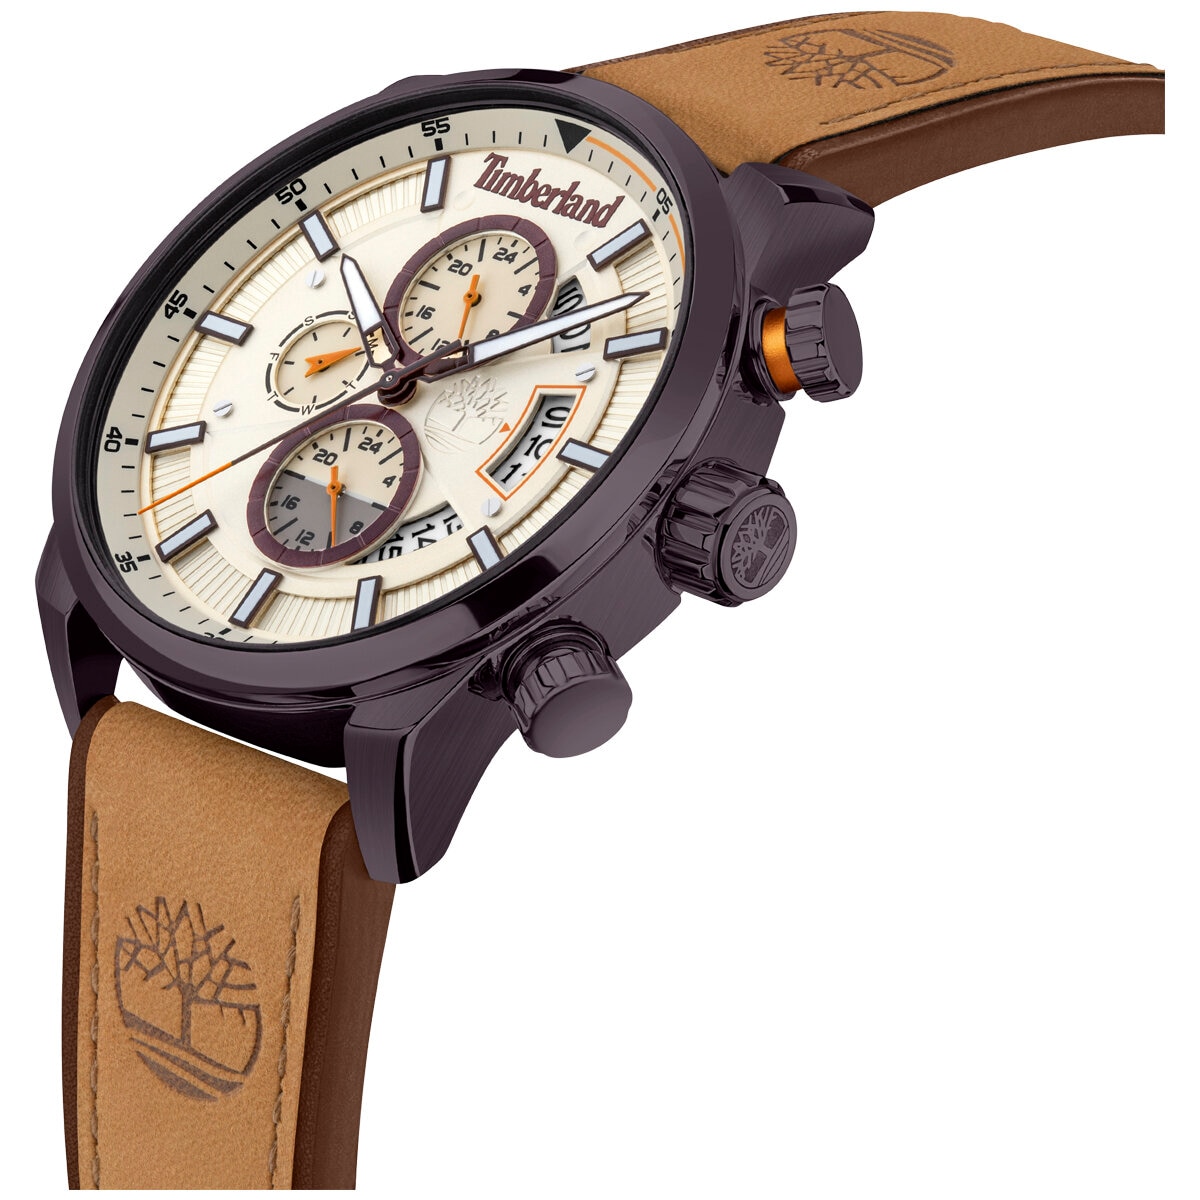 Timberland Men's Callahan Chronograph Watch